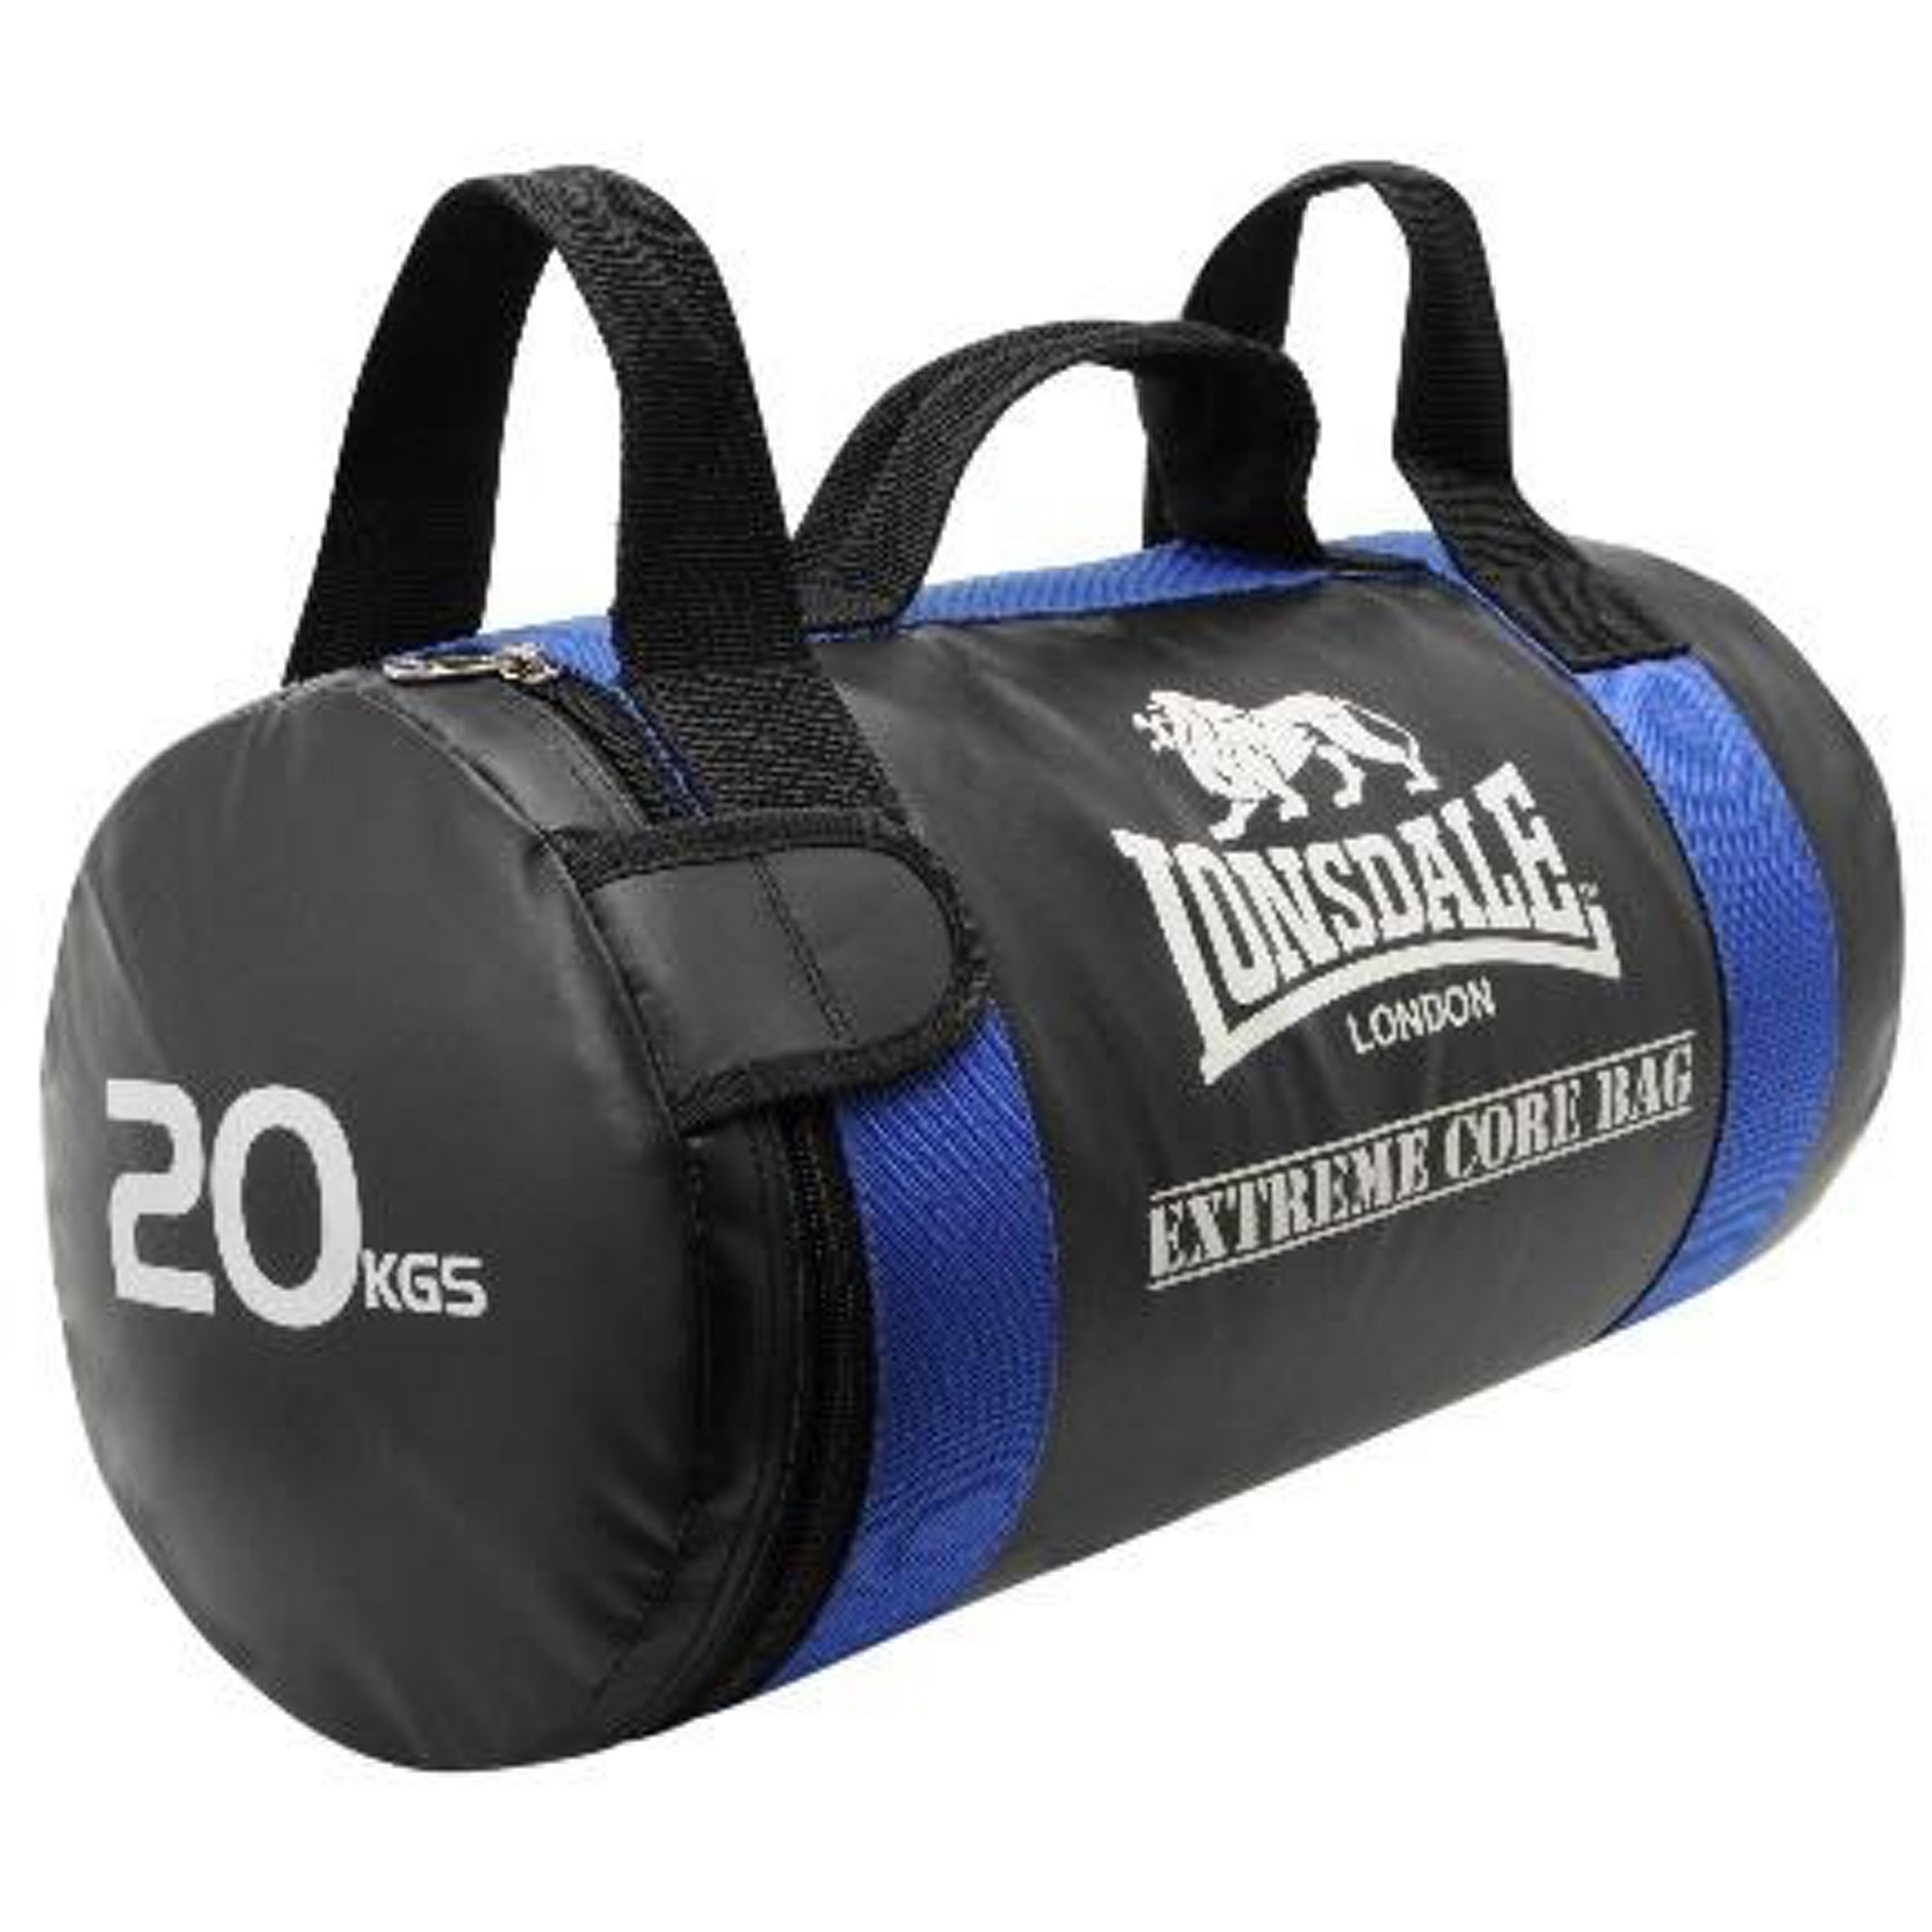 Lonsdale Extreme Core Bag 20kg Blue